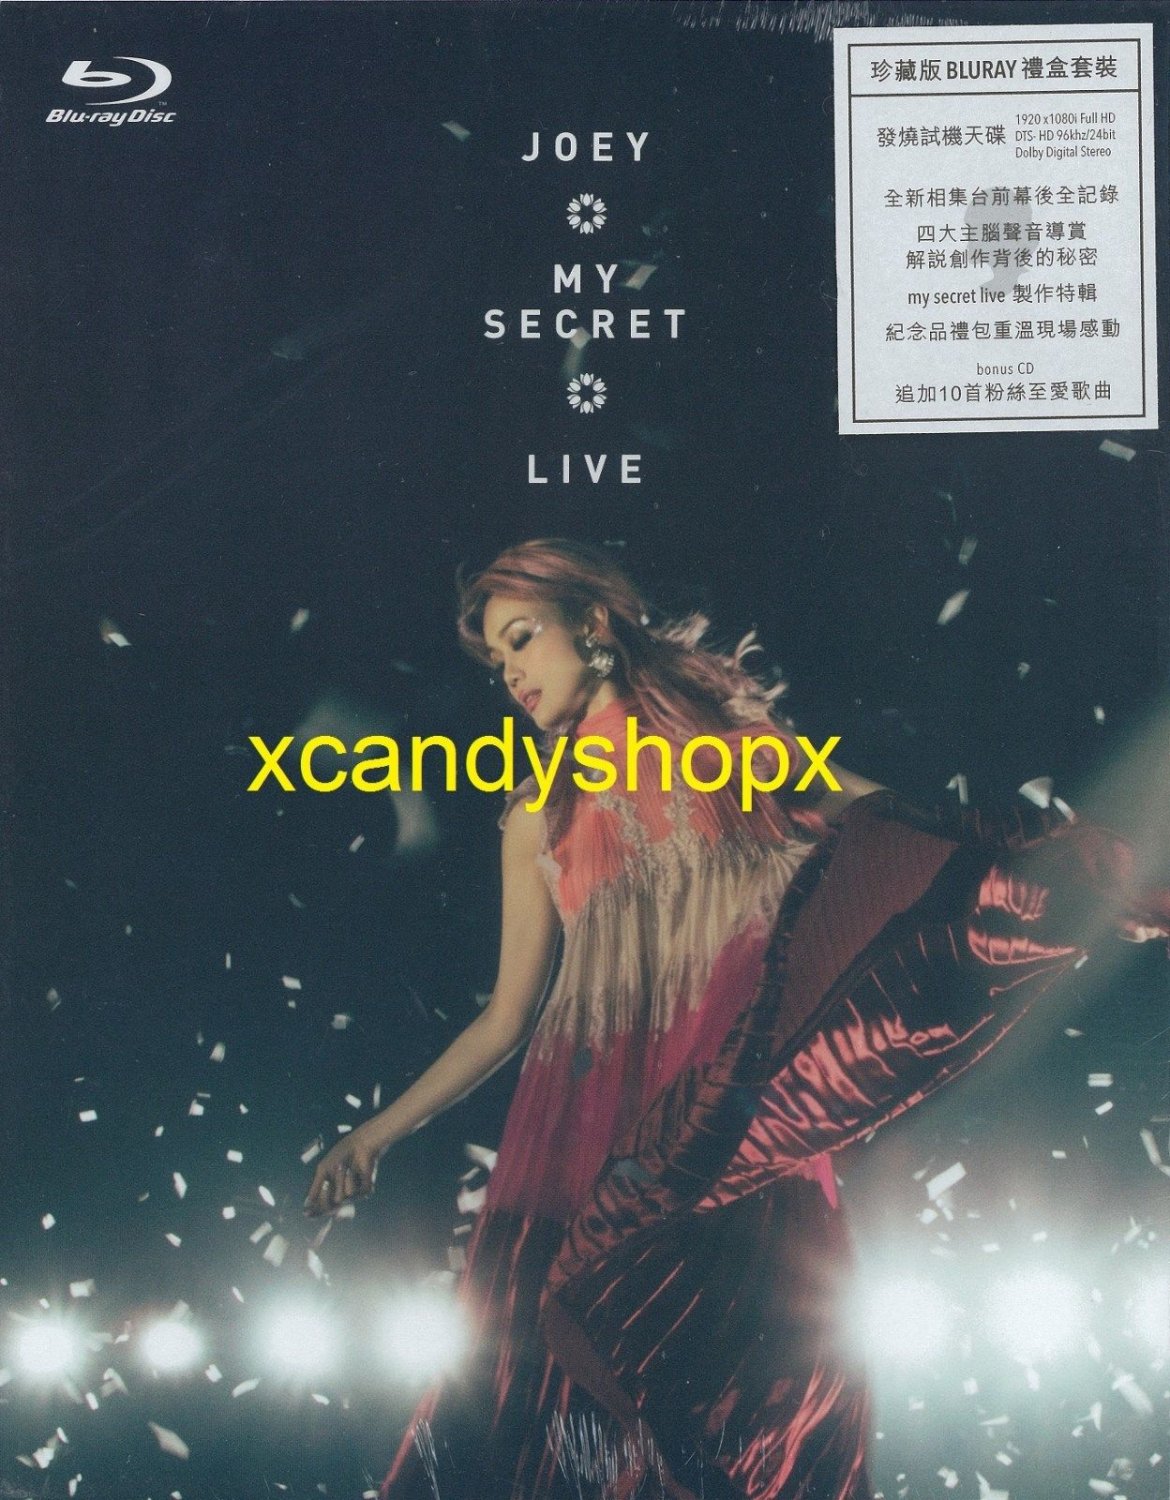 JOEY YUNG å®¹ç¥�å�� My Secret Live 2017 2Blu-ray+1CD Hong Kong limited boxset